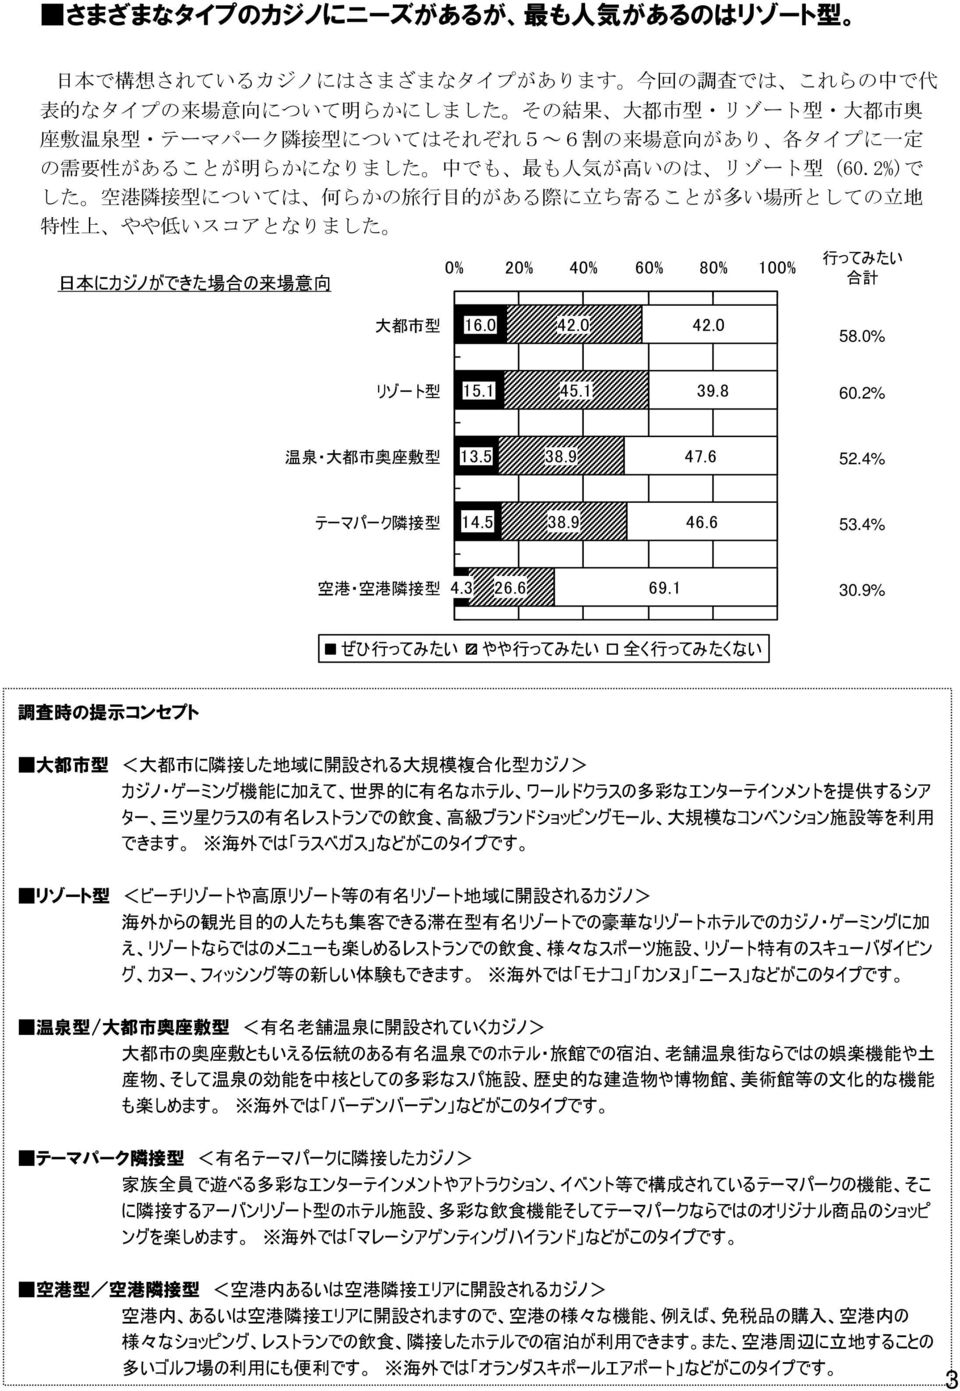 2%)で した 空 港 隣 接 型 については 何 らかの 旅 行 目 的 がある 際 に 立 ち 寄 ることが 多 い 場 所 としての 立 地 特 性 上 やや 低 いスコアとなりました 日 本 にカジノができた 場 合 の 来 場 意 向 0% 20% 40% 60% 80% 100% 行 ってみたい 合 計 大 都 市 型 16.0 42.0 42.0 58.0% リゾート 型 15.